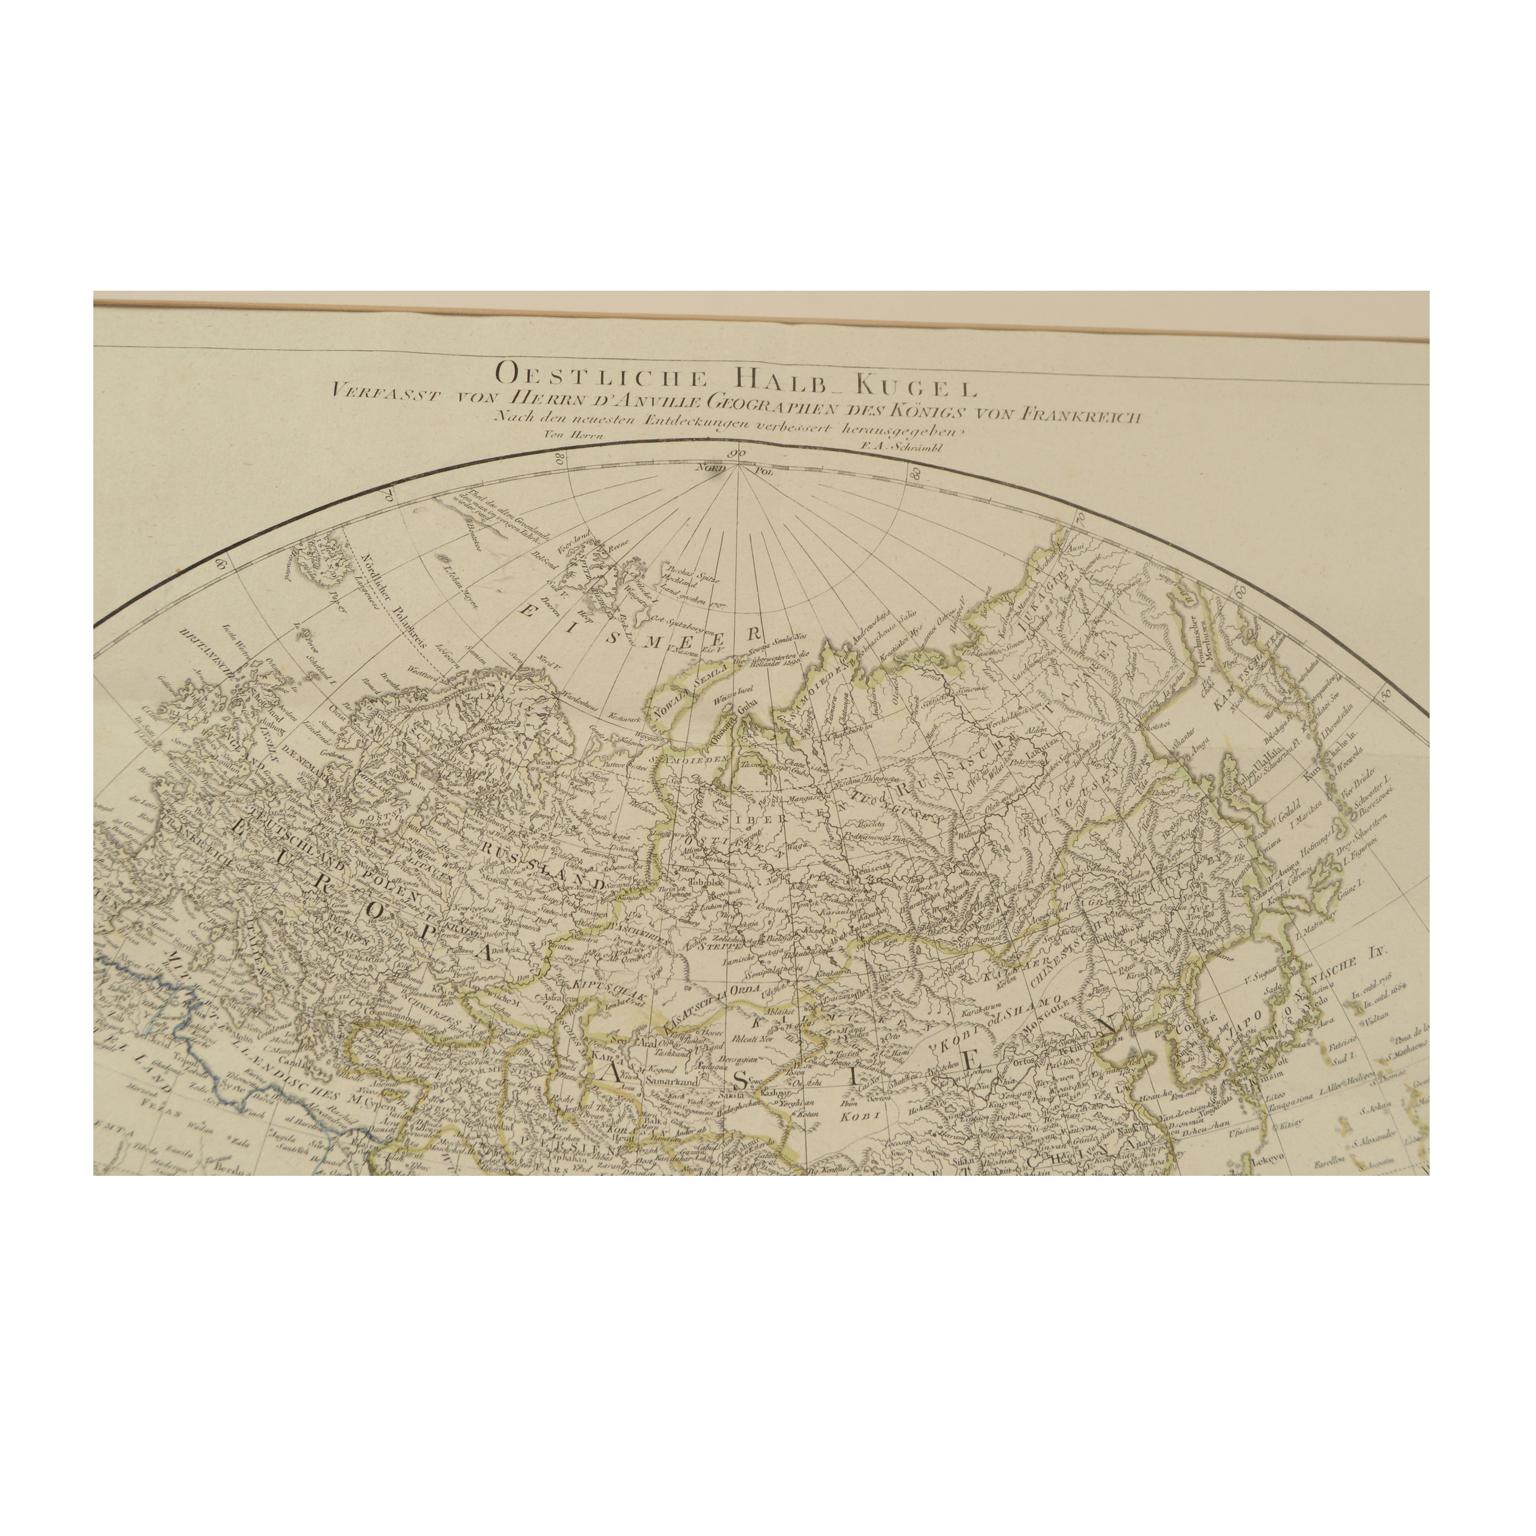 Antique World Map Published in Vienna 1786 by Franz Anton Schraembl 8